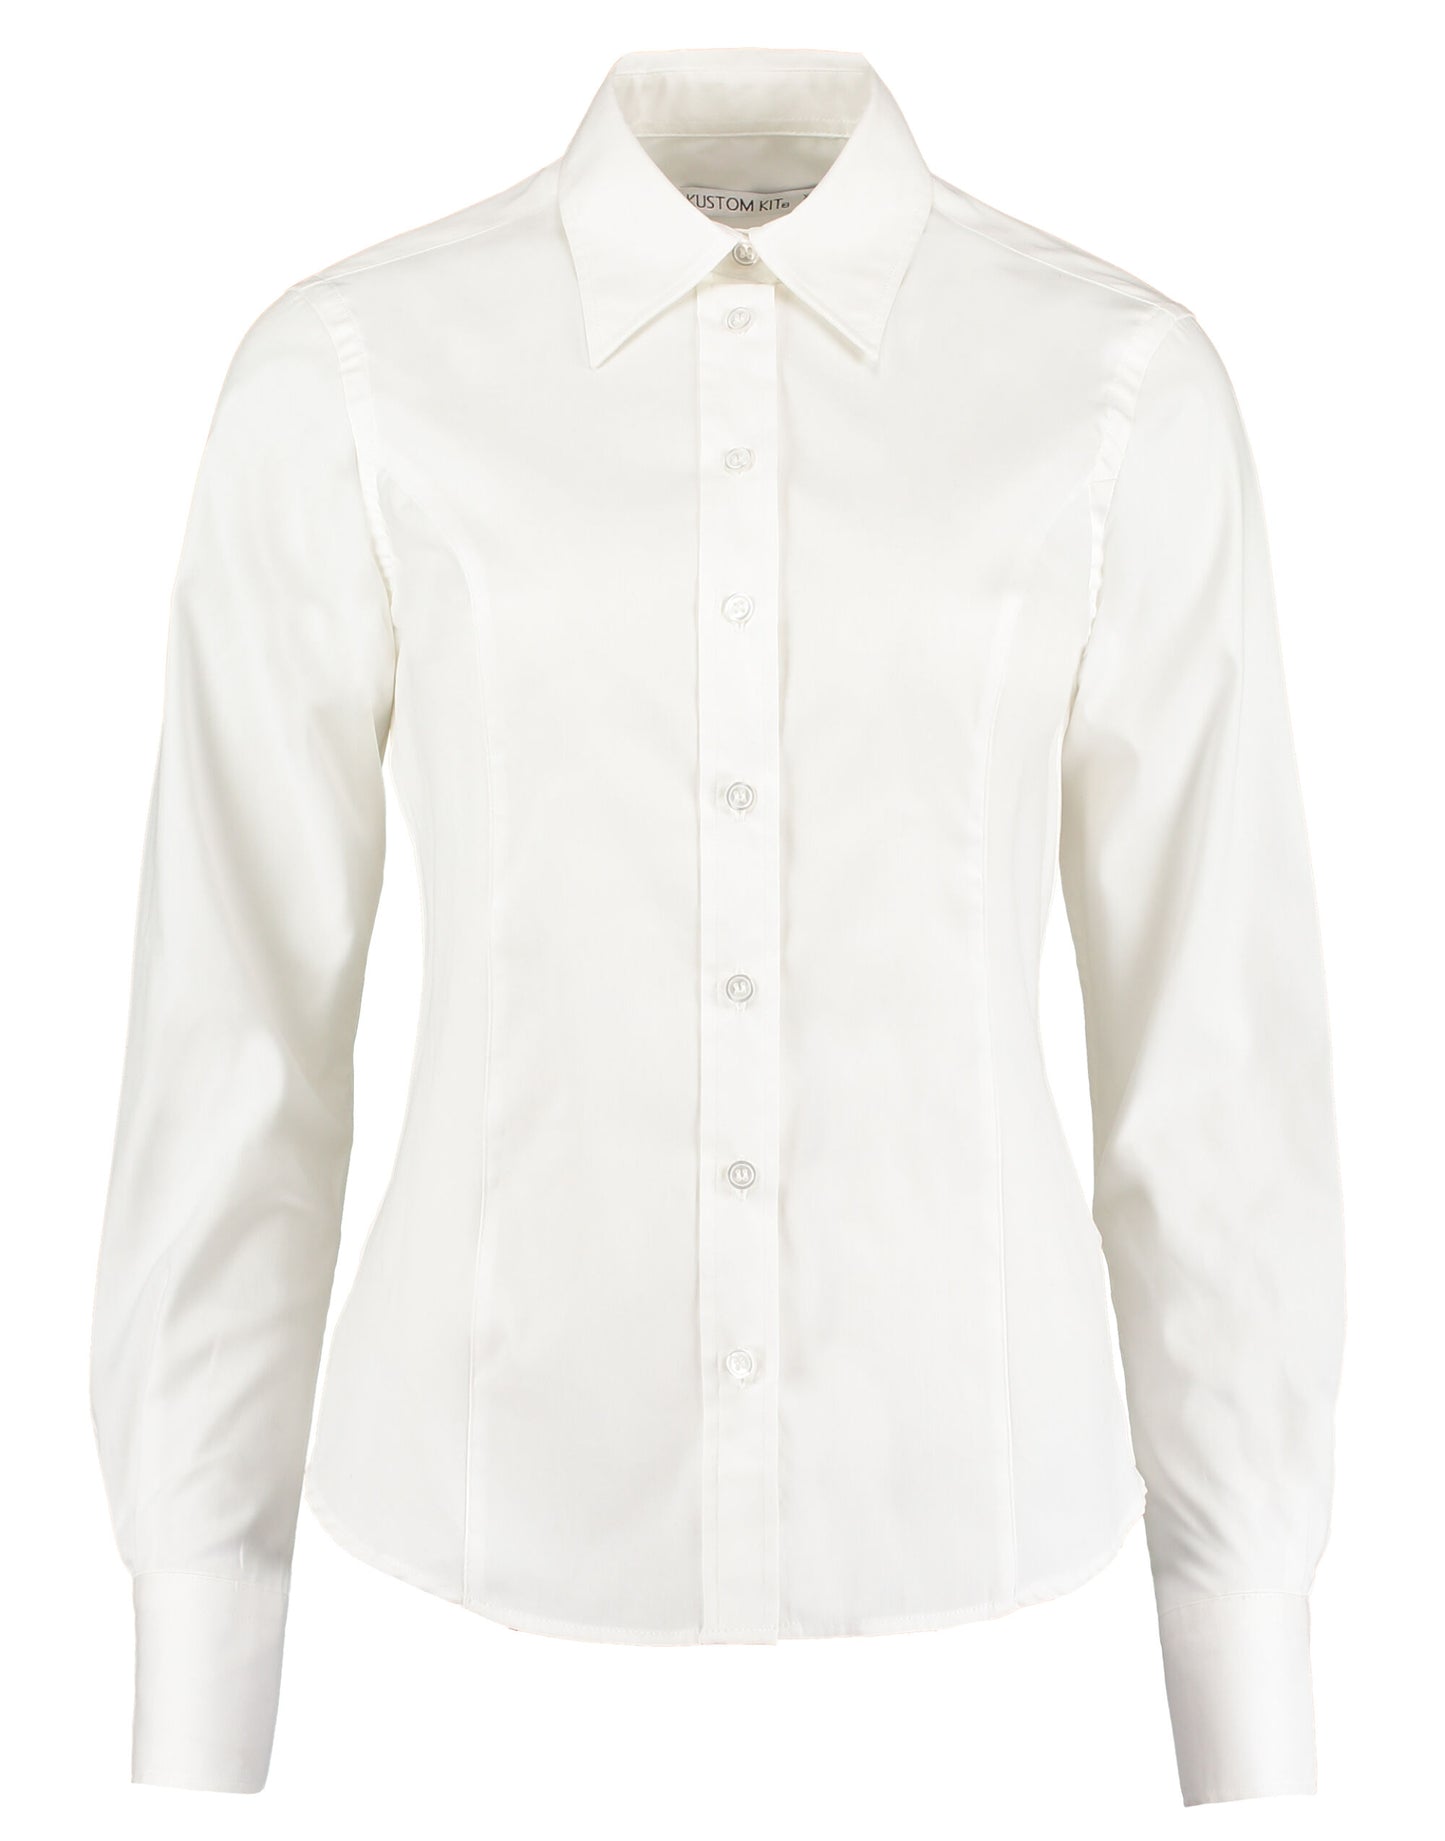 KK702 Kustom Kit Womens Oxford Shirt Long Sleeve